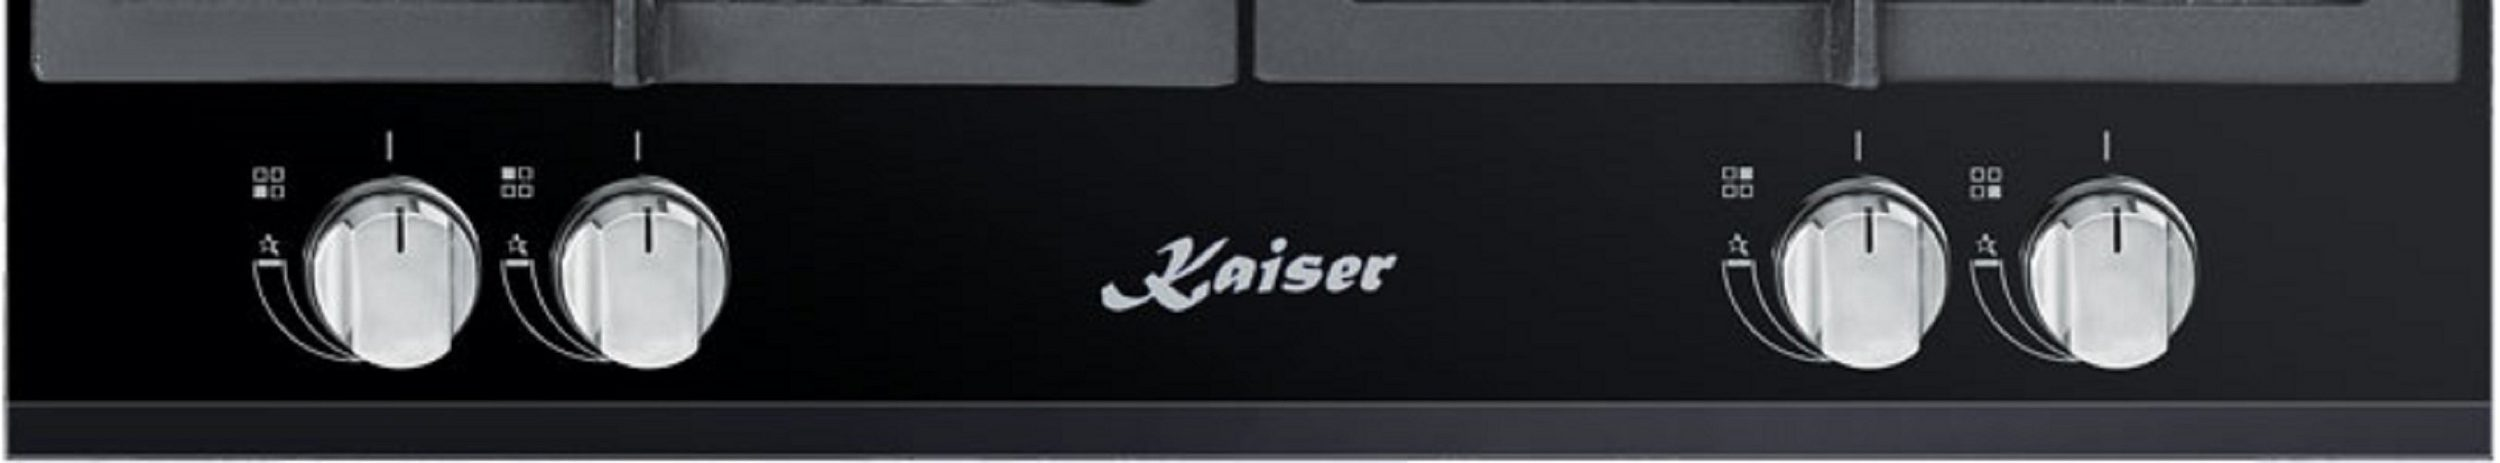 KAISER KCG 6394 Kochfelder) Gas (51 cm 4 breit